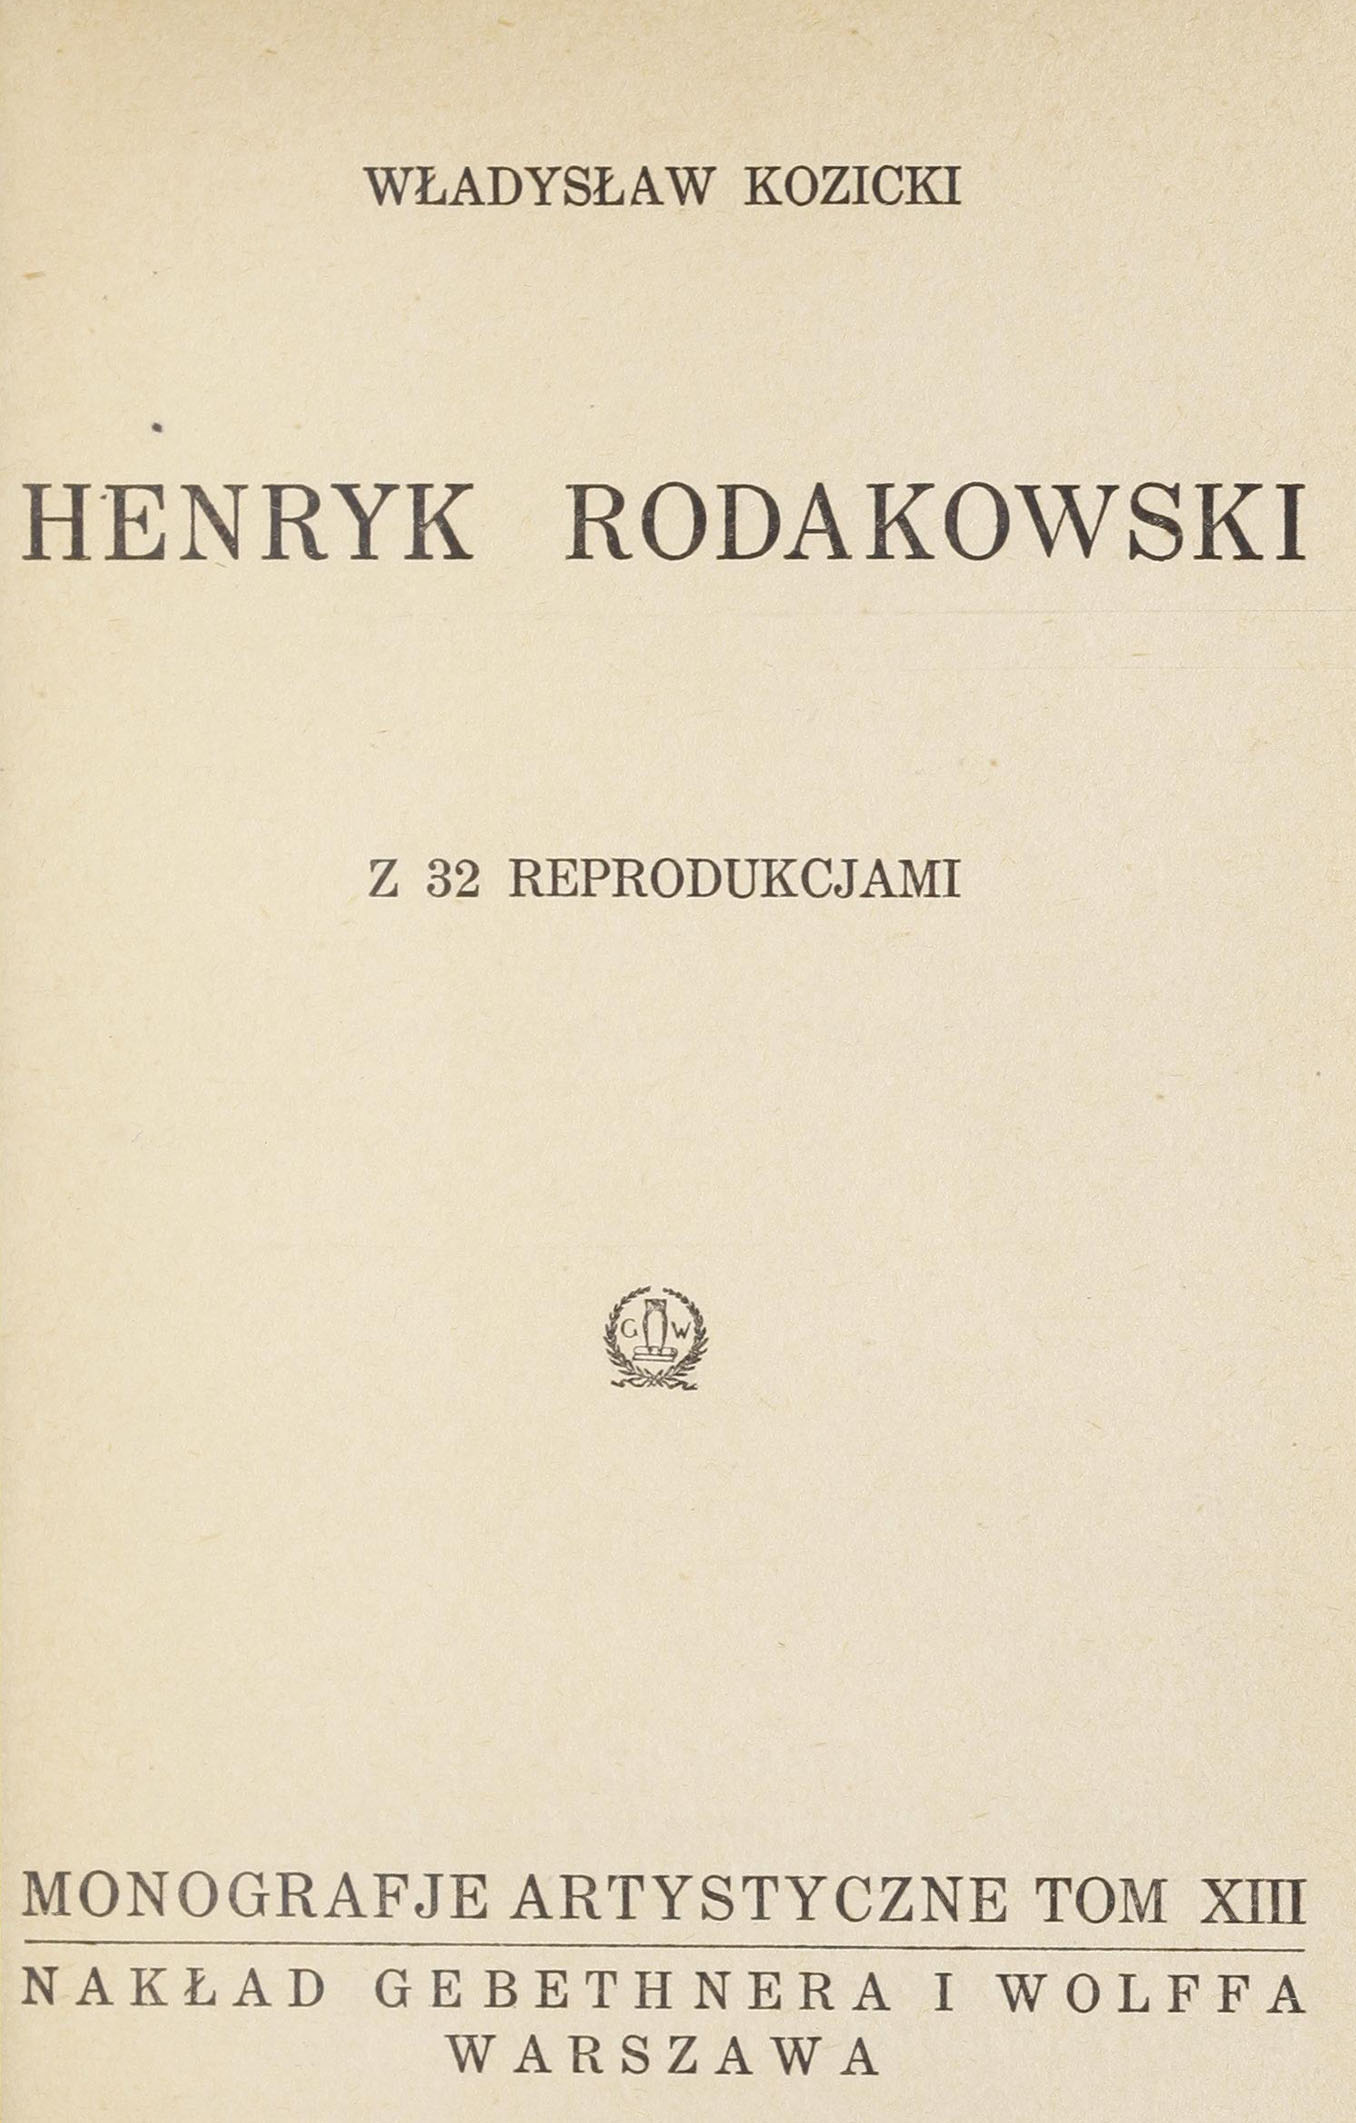 Władysław Kozicki, Henryk Rodakowski